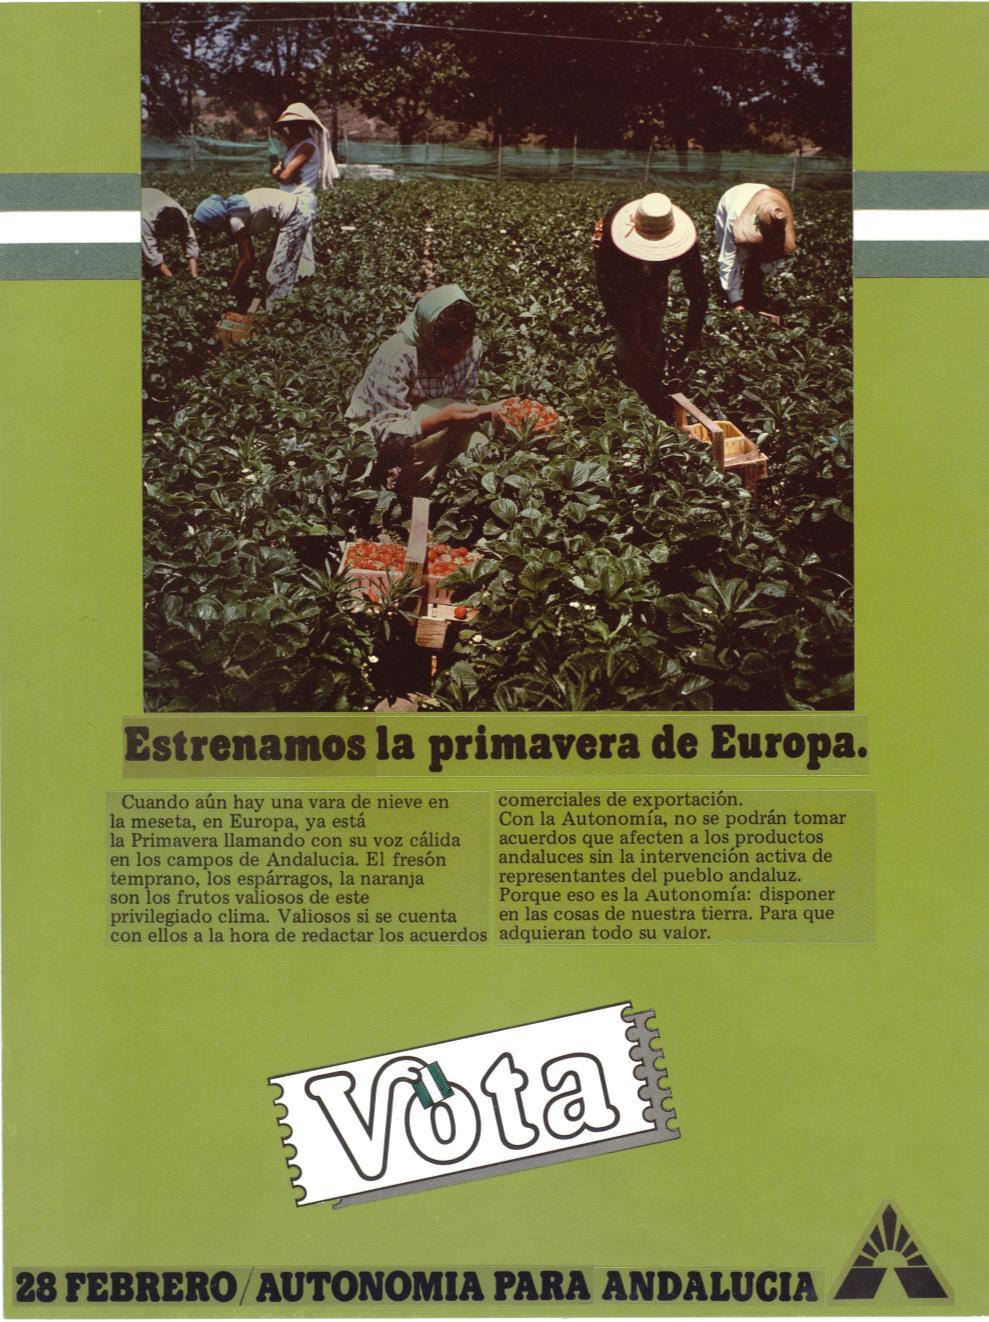 13 CEF (Contacto-Expansa-Frontera) Publicidad: VOTA. 28 FEBRERO.